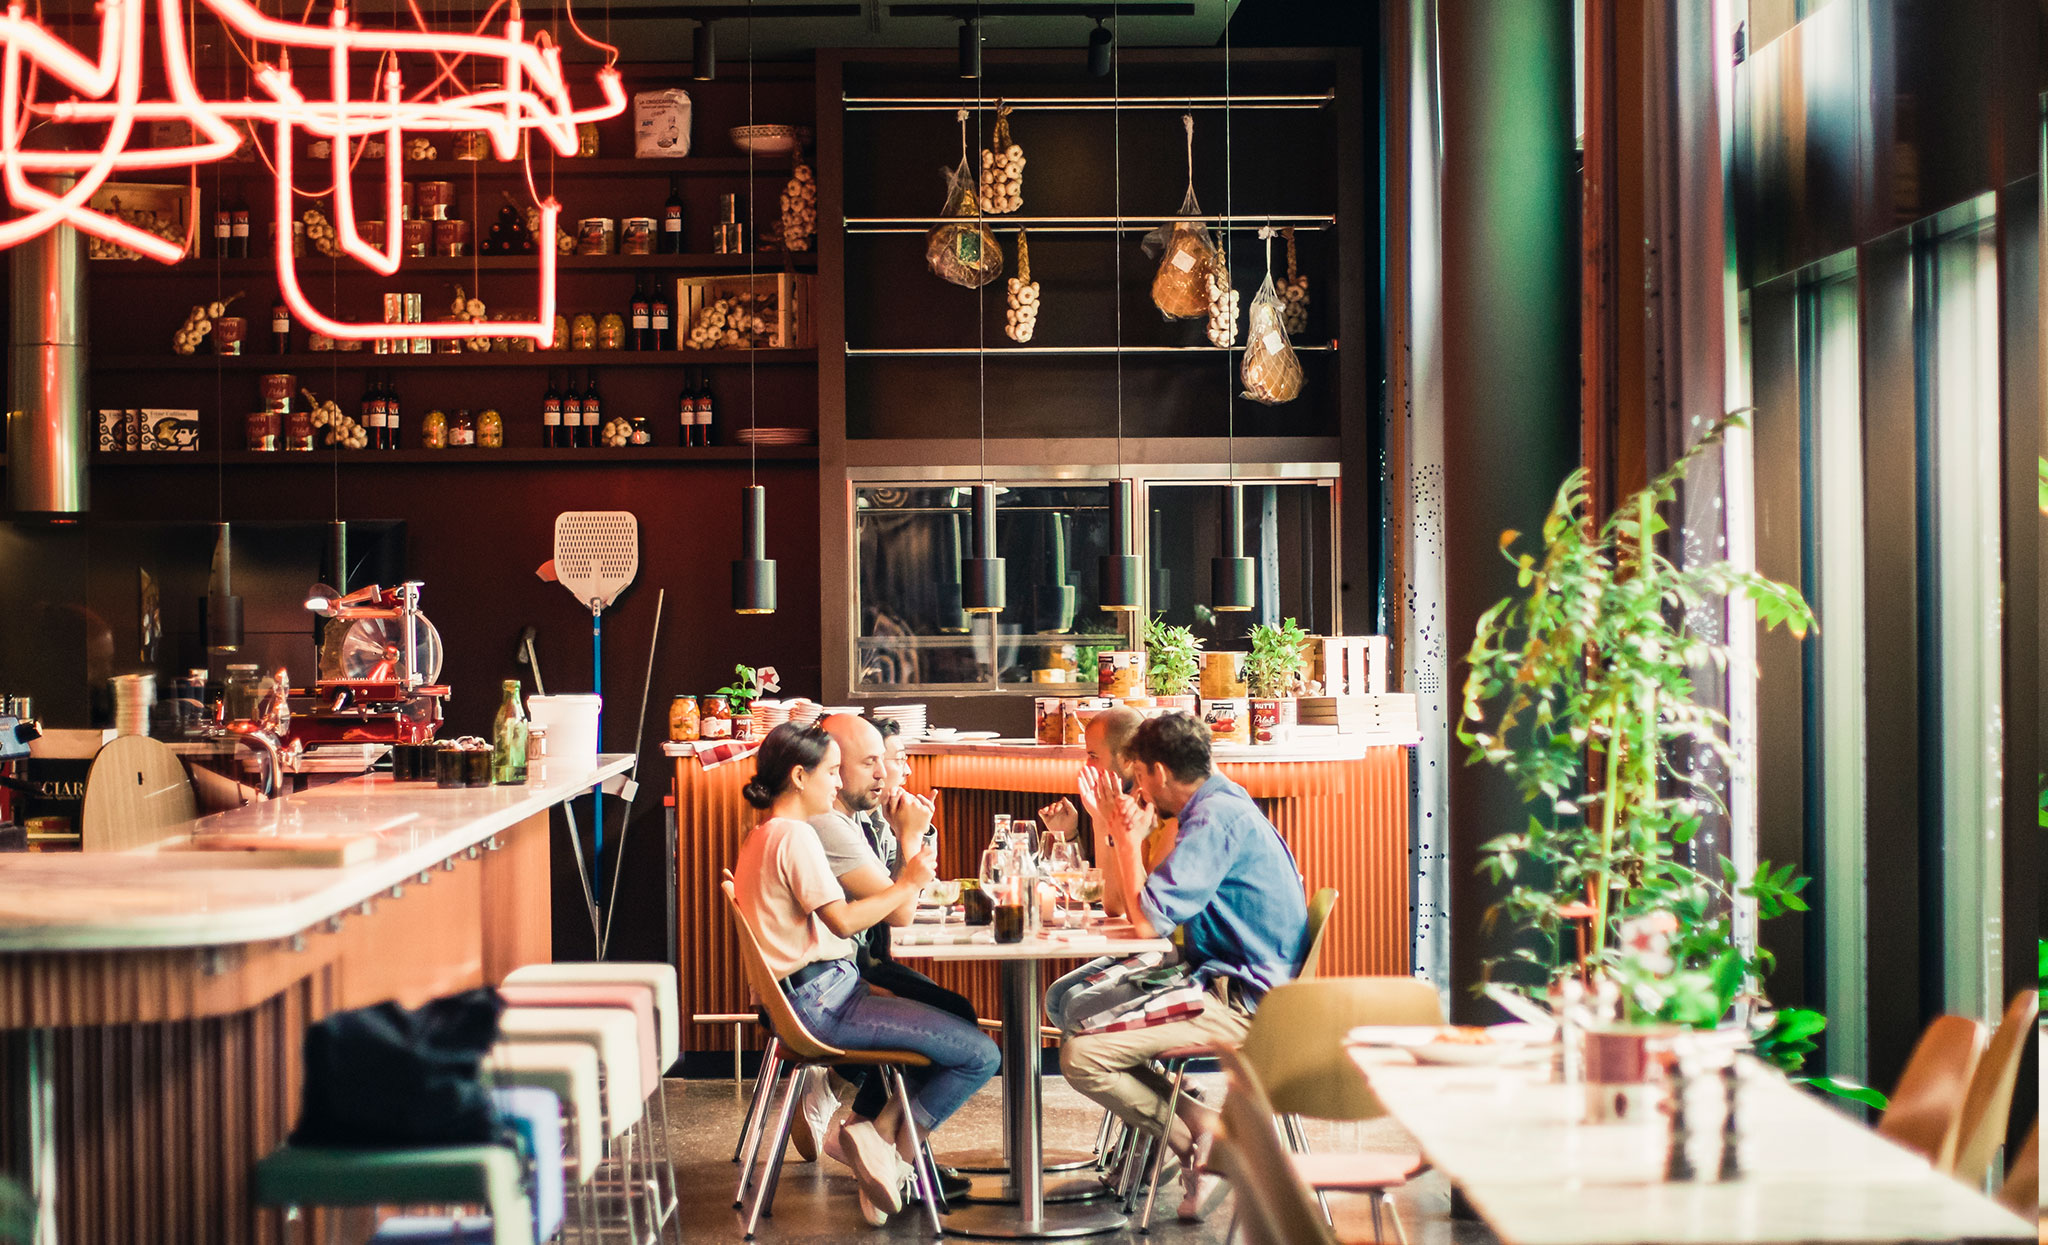 Eine Gruppe Menschen besucht ein italienisches Restaurant in Zürich und sitzt gemeinsam im RIBELLI am Tisch